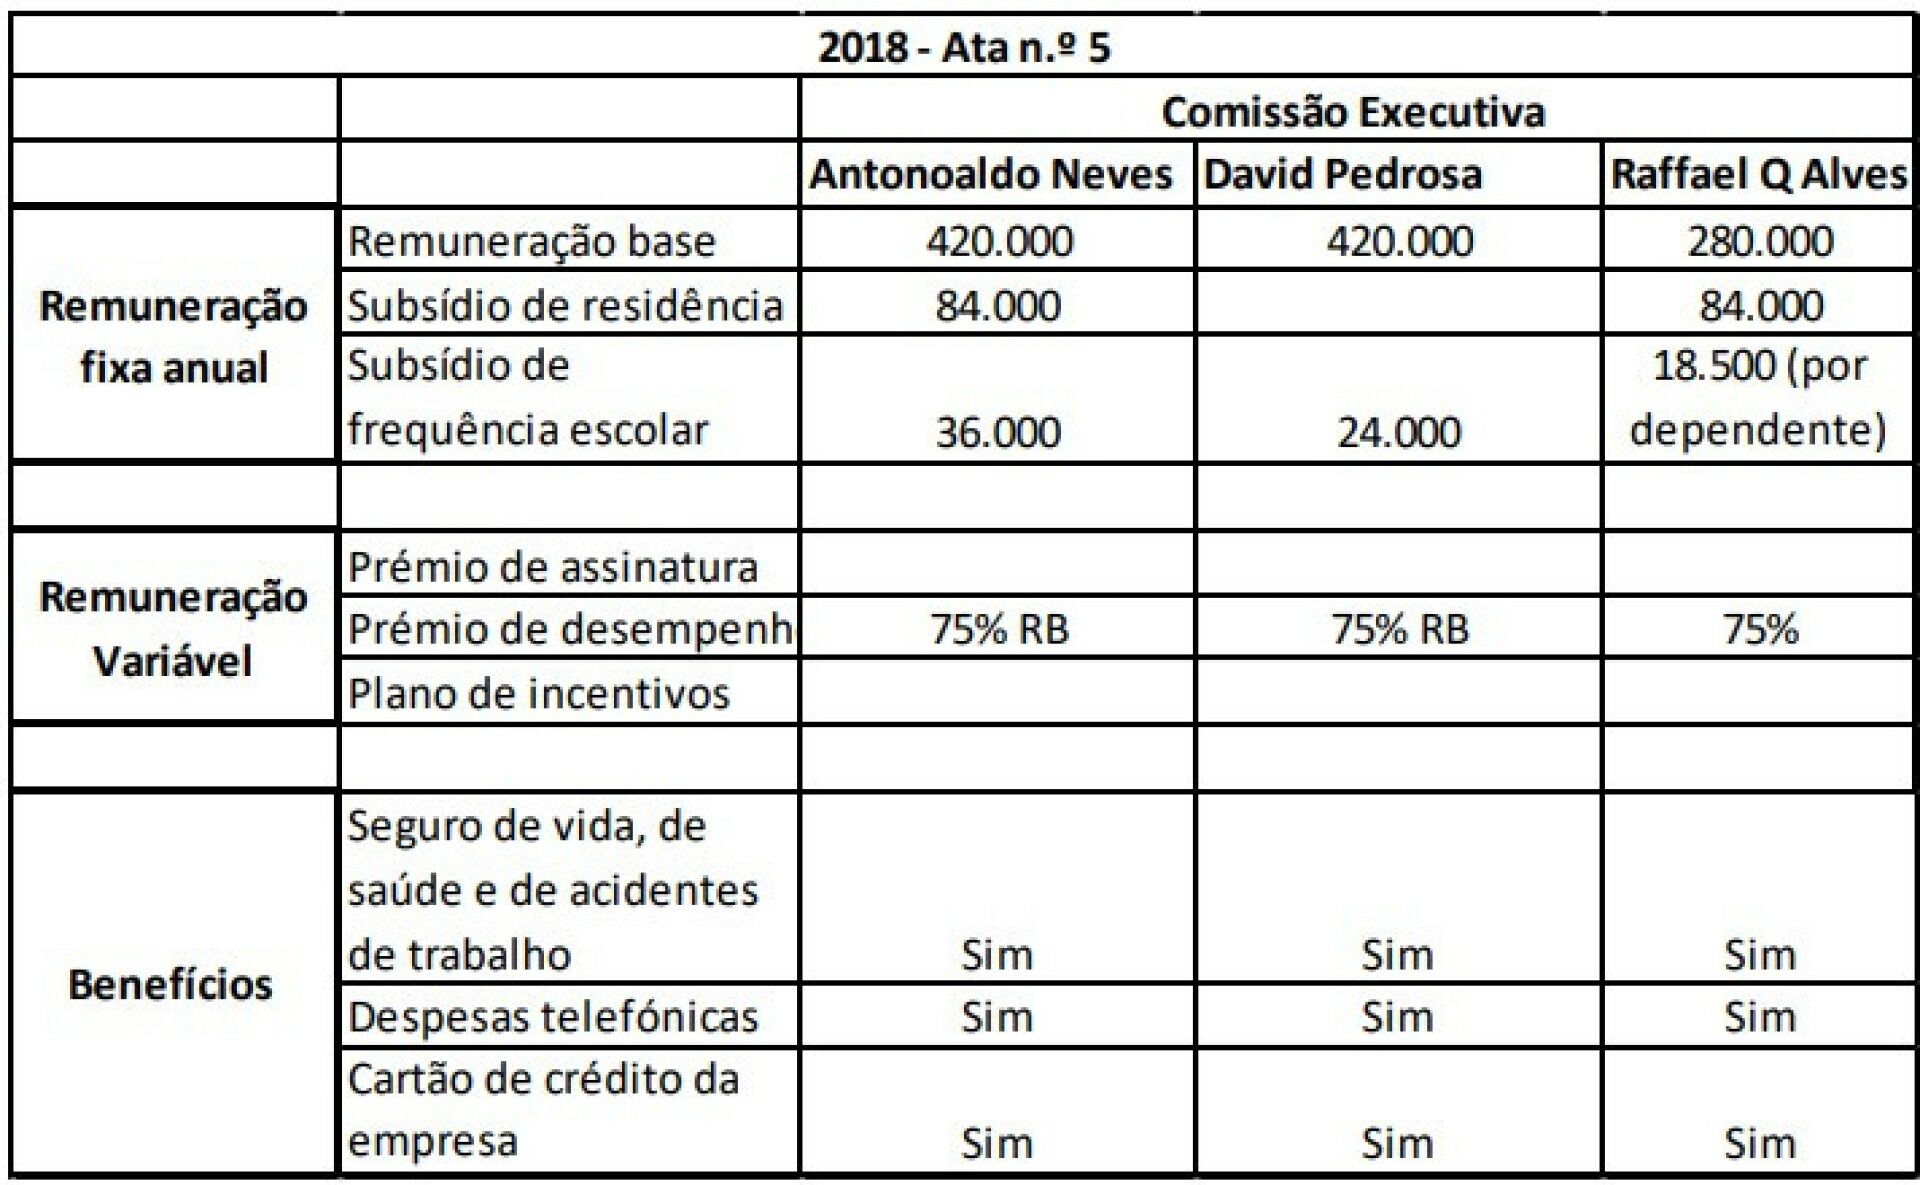 Quadro mostra valores pagos pela TAP a Antonoaldo Neves, David Pedrosa e Raffael Alves em 2018.